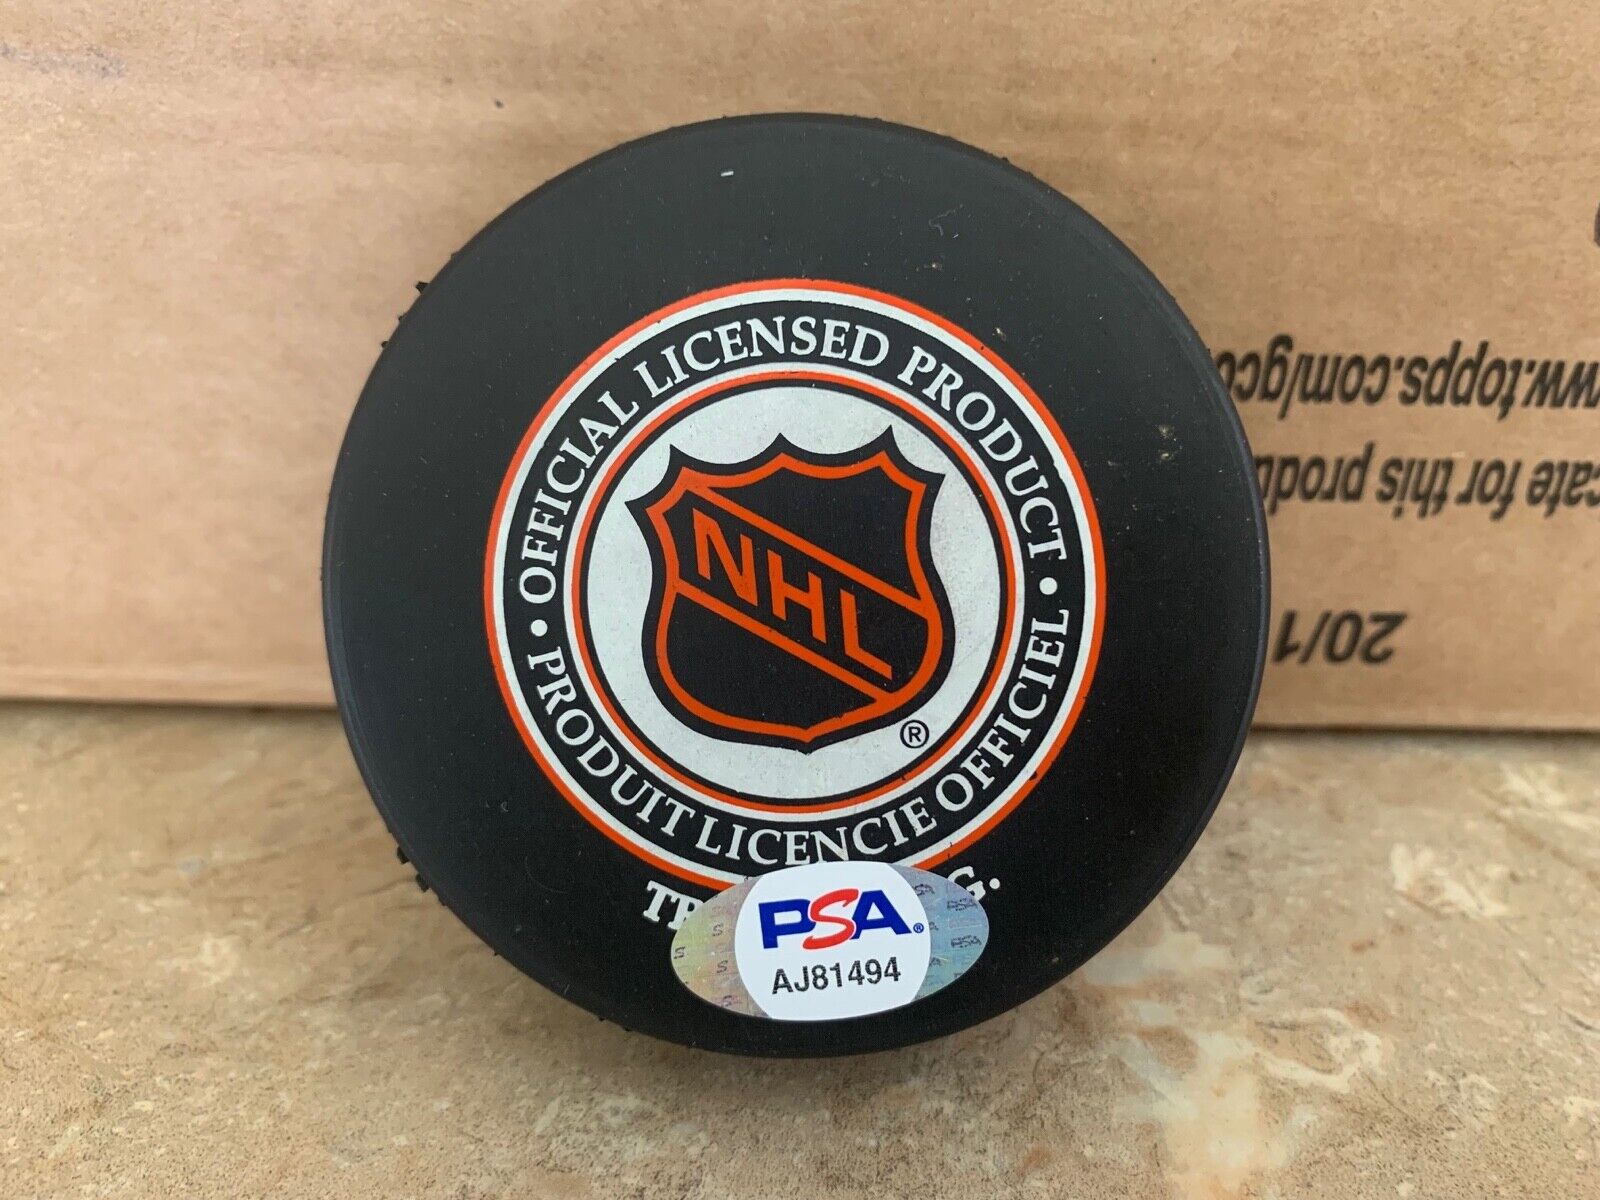 Gordie Howe Autographed Hockey Puck NHL Red Wings PSA Certification AJ81494